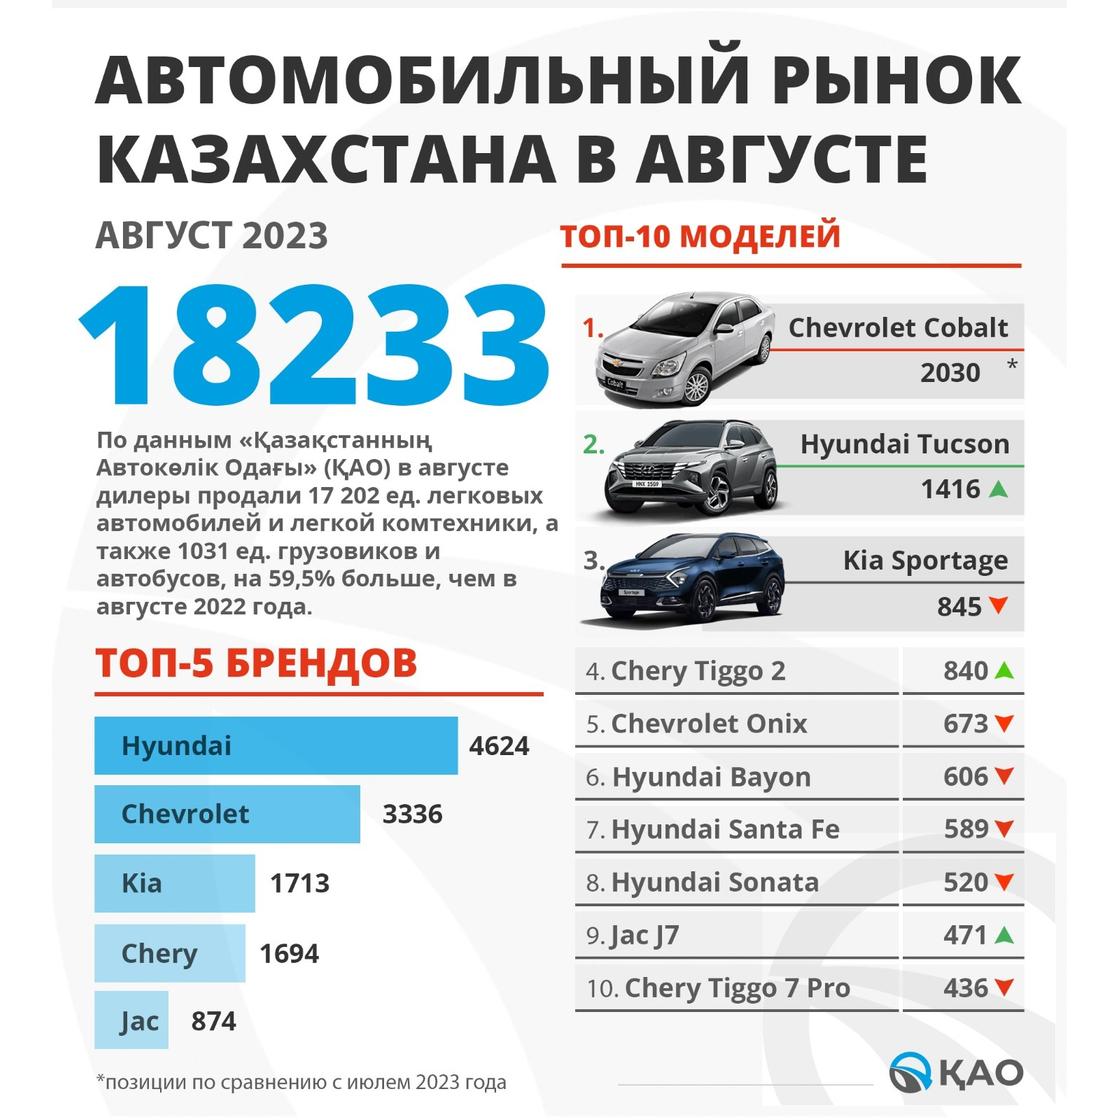 Автомобильный рынок Казахстана в августе 2023 года